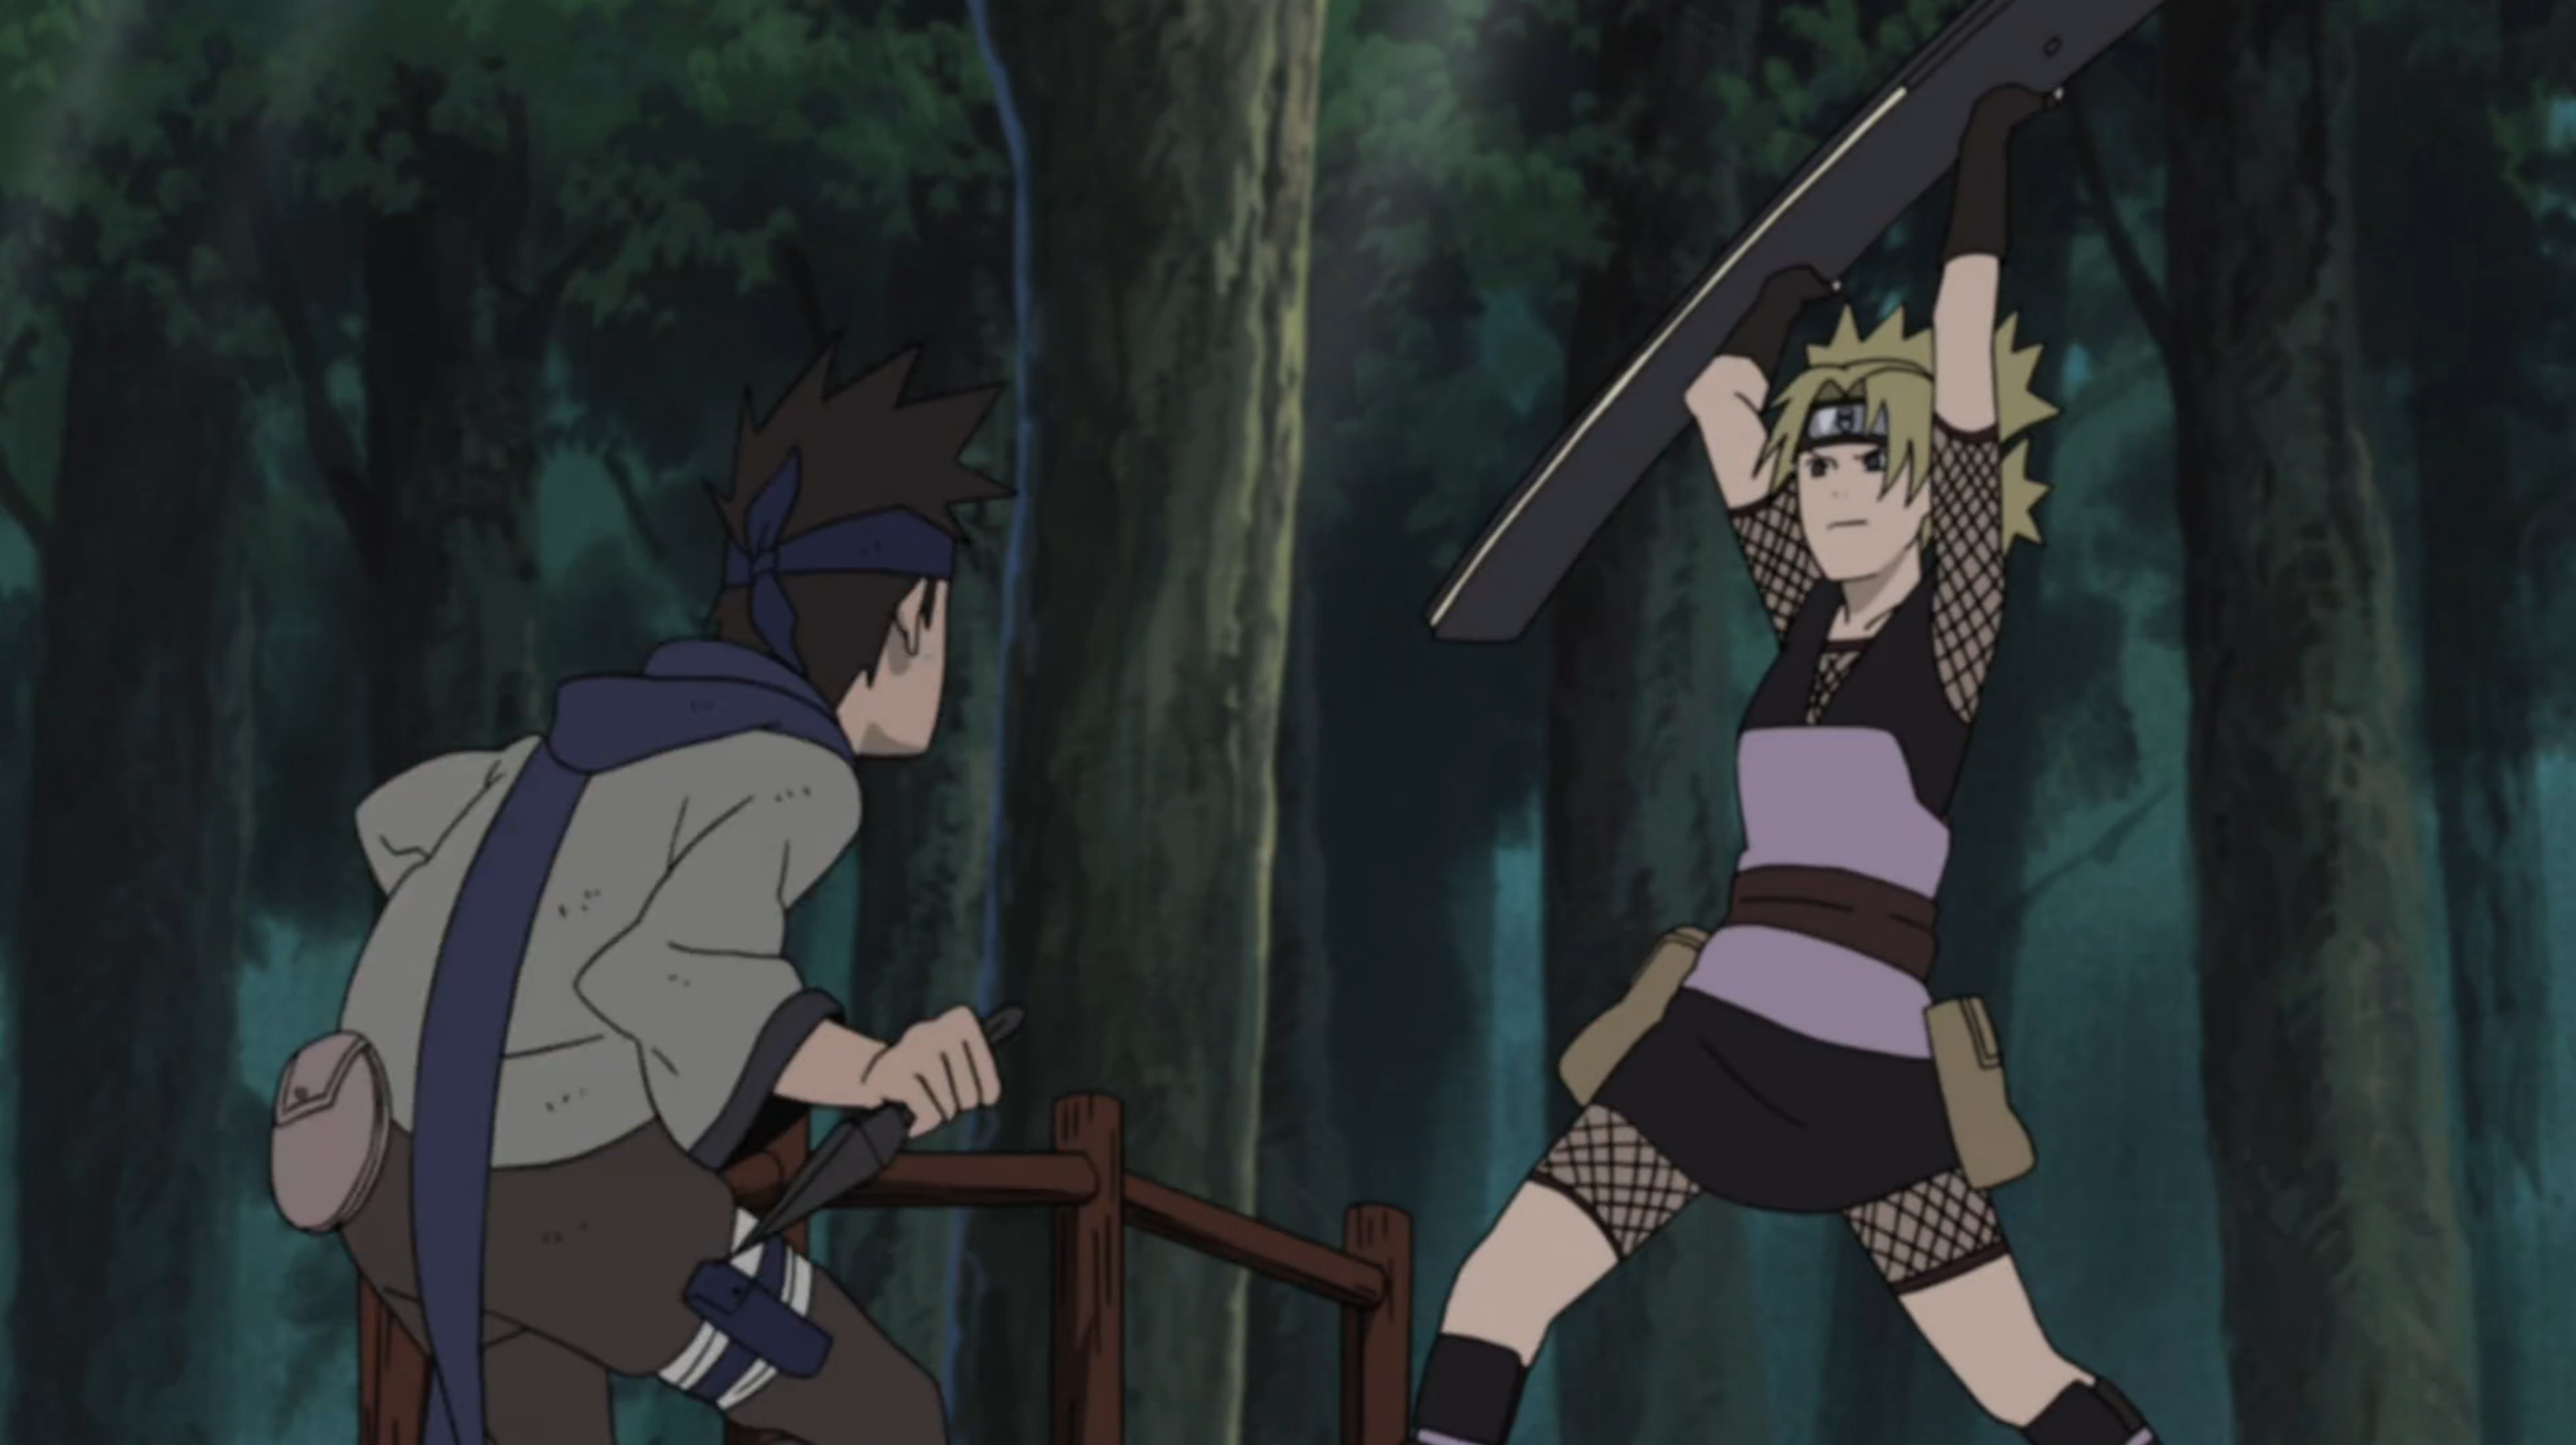 Naruto Shippuden [2007] Season 1. 26 Episodes  Shikamaru, Shikamaru and  temari, Naruto shippuden characters